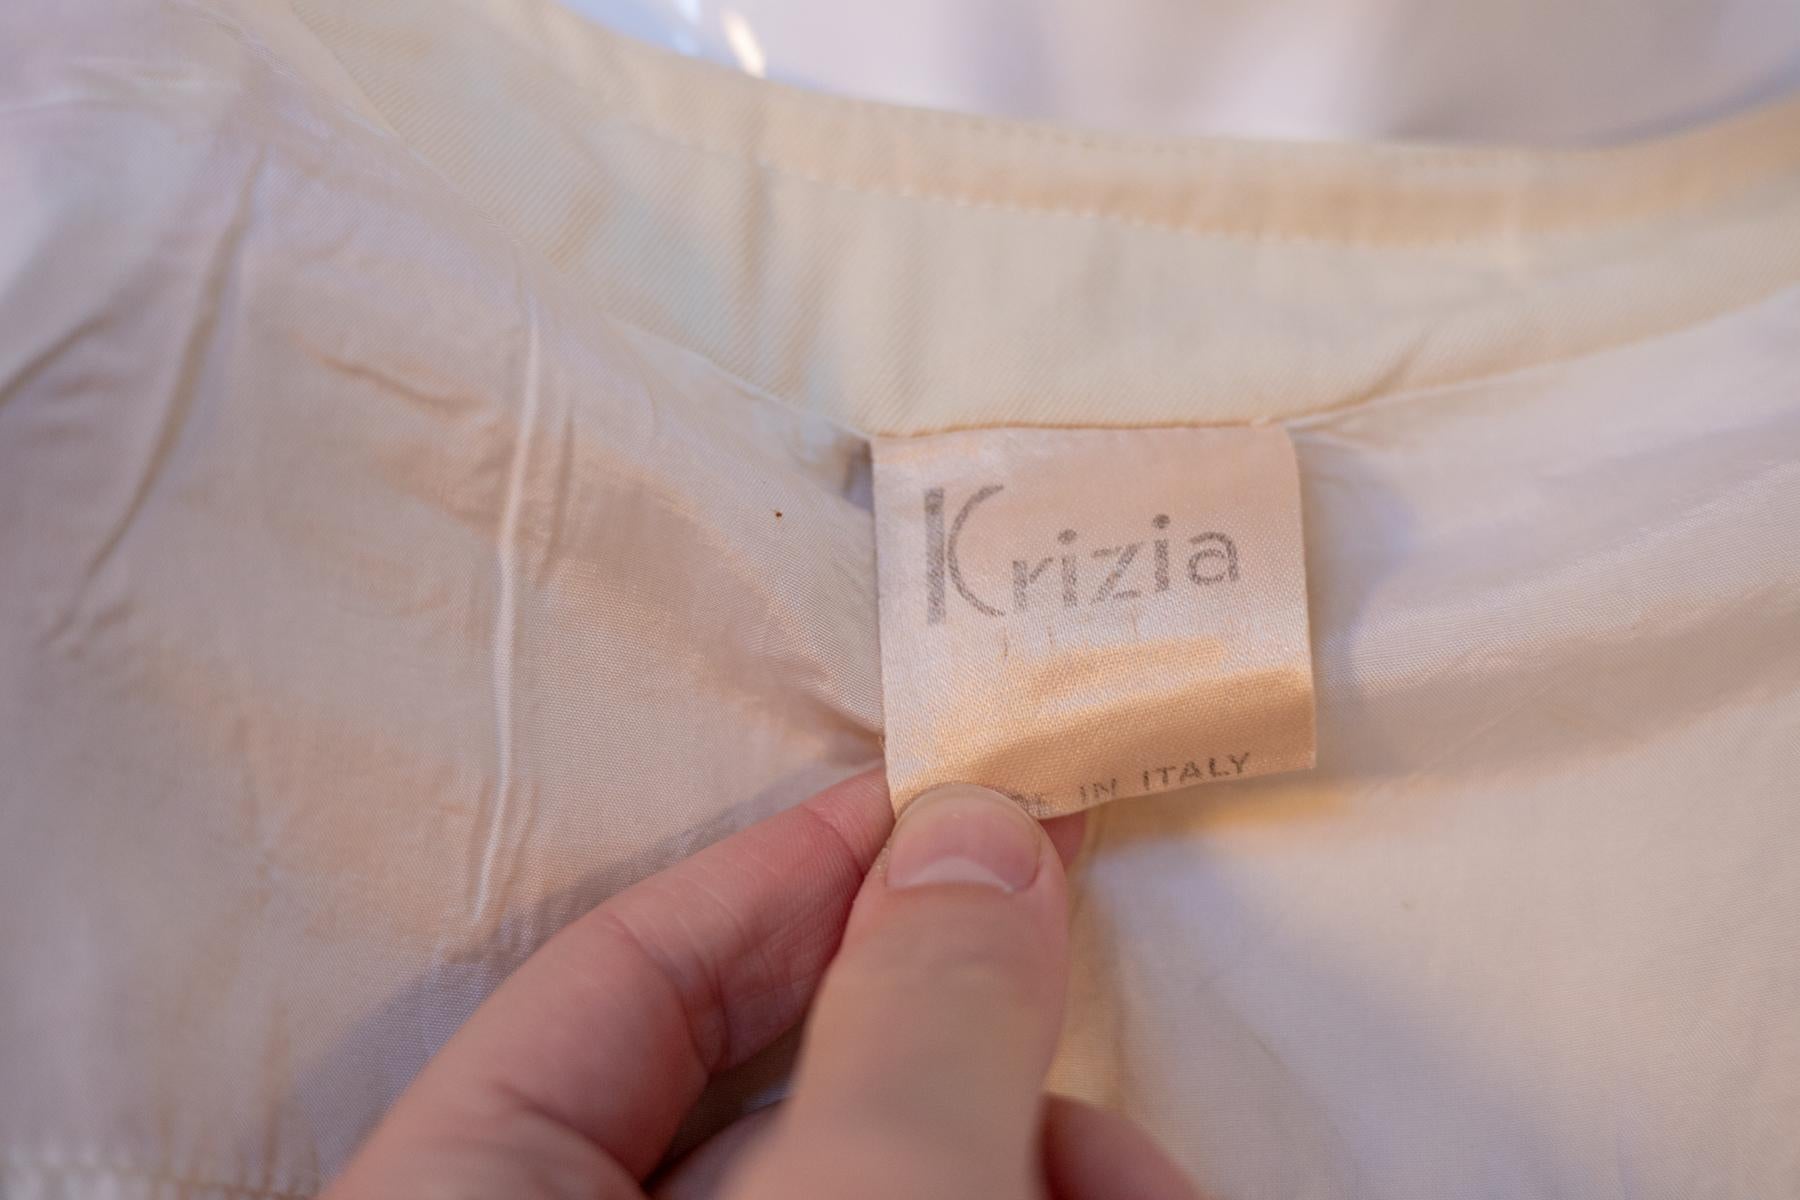 Blouse chic en laine ivoire par Krizia des années 2000, fabriquée en Italie. ÉTIQUETTE ORIGINALE.
Le chemisier est entièrement réalisé en laine de couleur ivoire, avec un col en forme de U. La coupe est très droite et sévère. Les manches sont